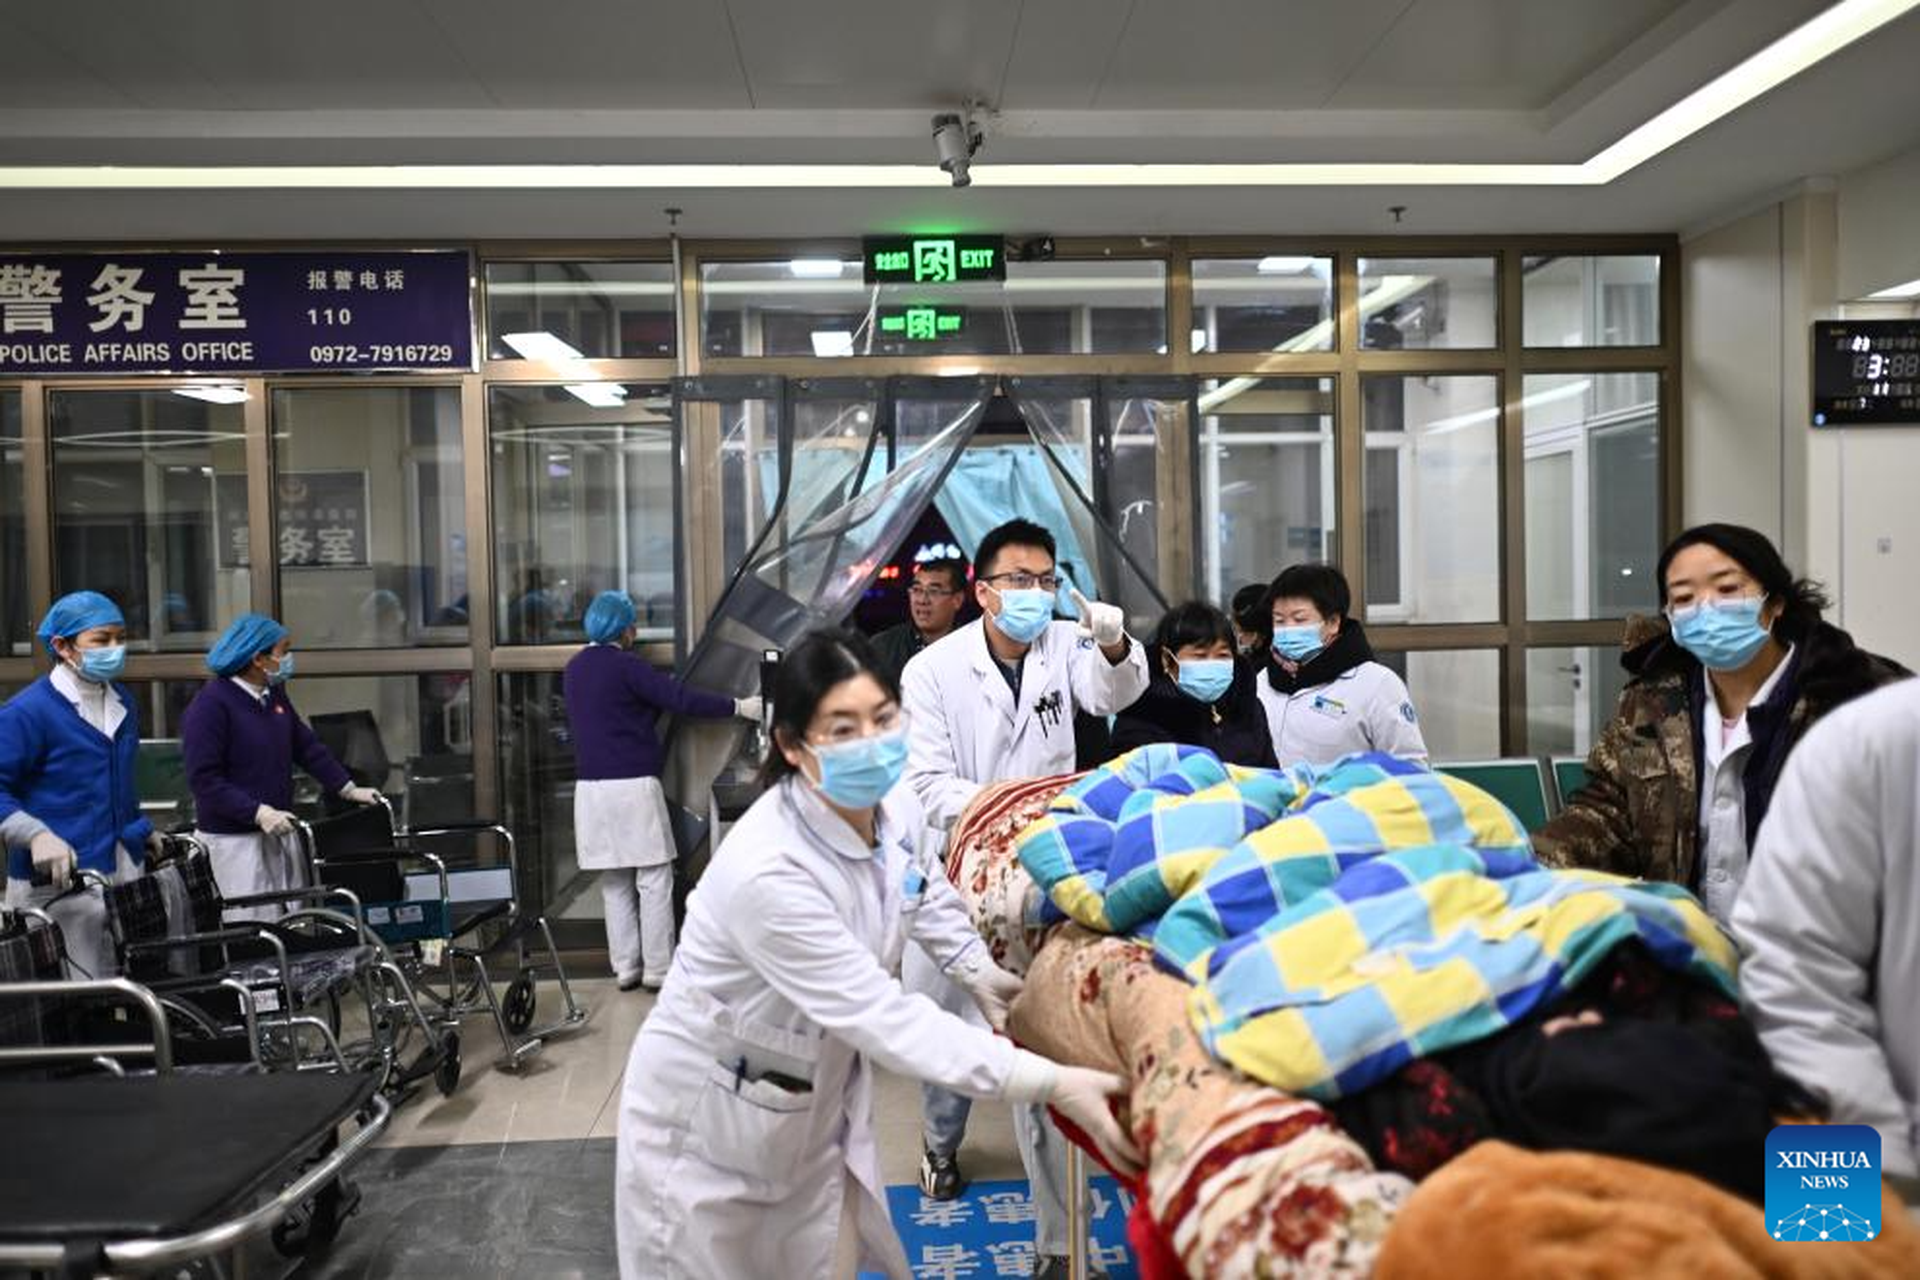 Cảnh đổ nát trong trận động đất khiến 111 người thiệt mạng ở Trung Quốc